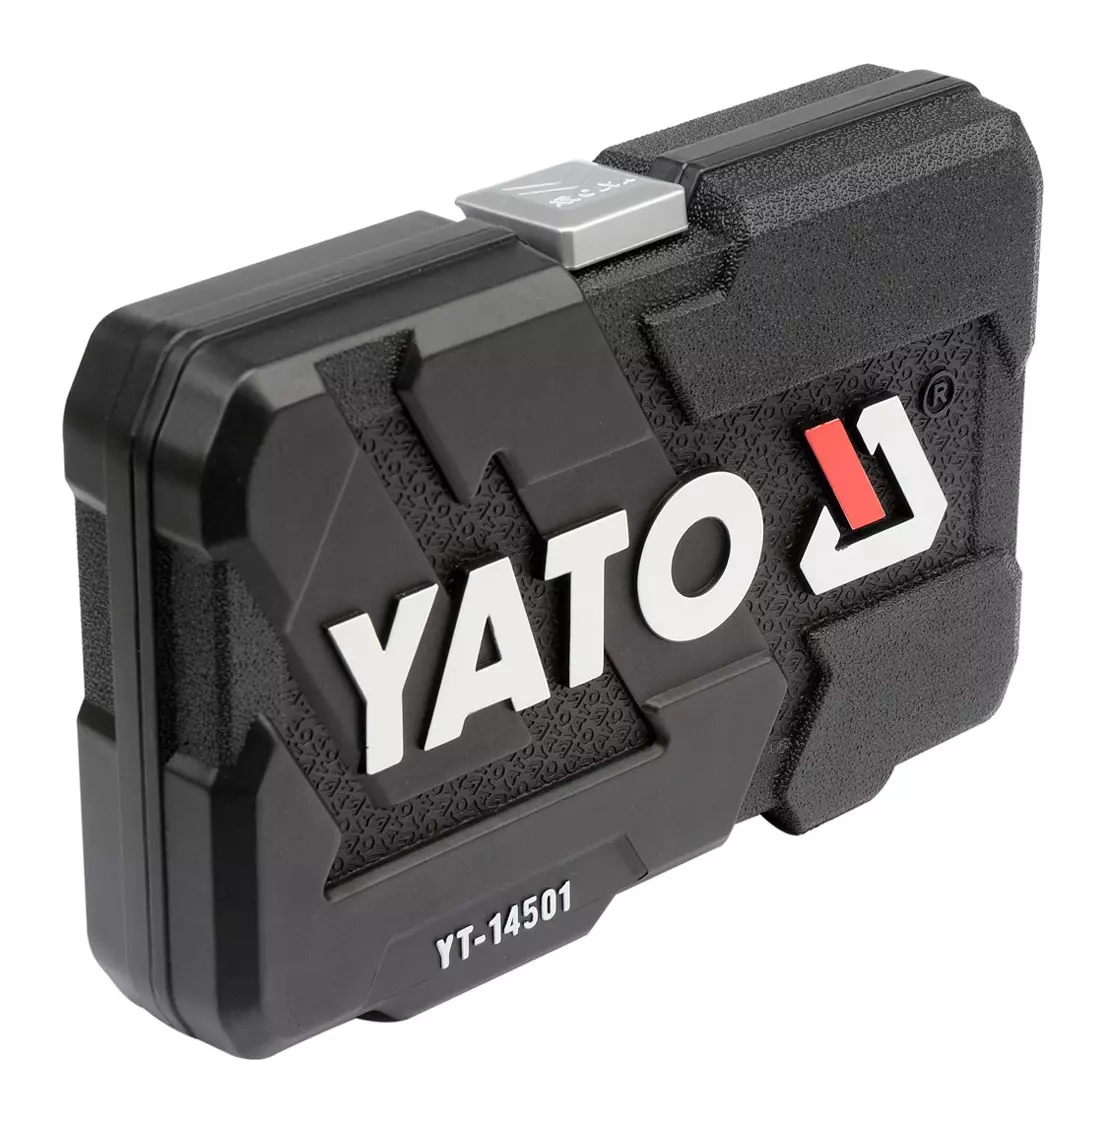 Набор торцевых ключей с трещоткой YATO 1/4 56 шт.(YT-14501)